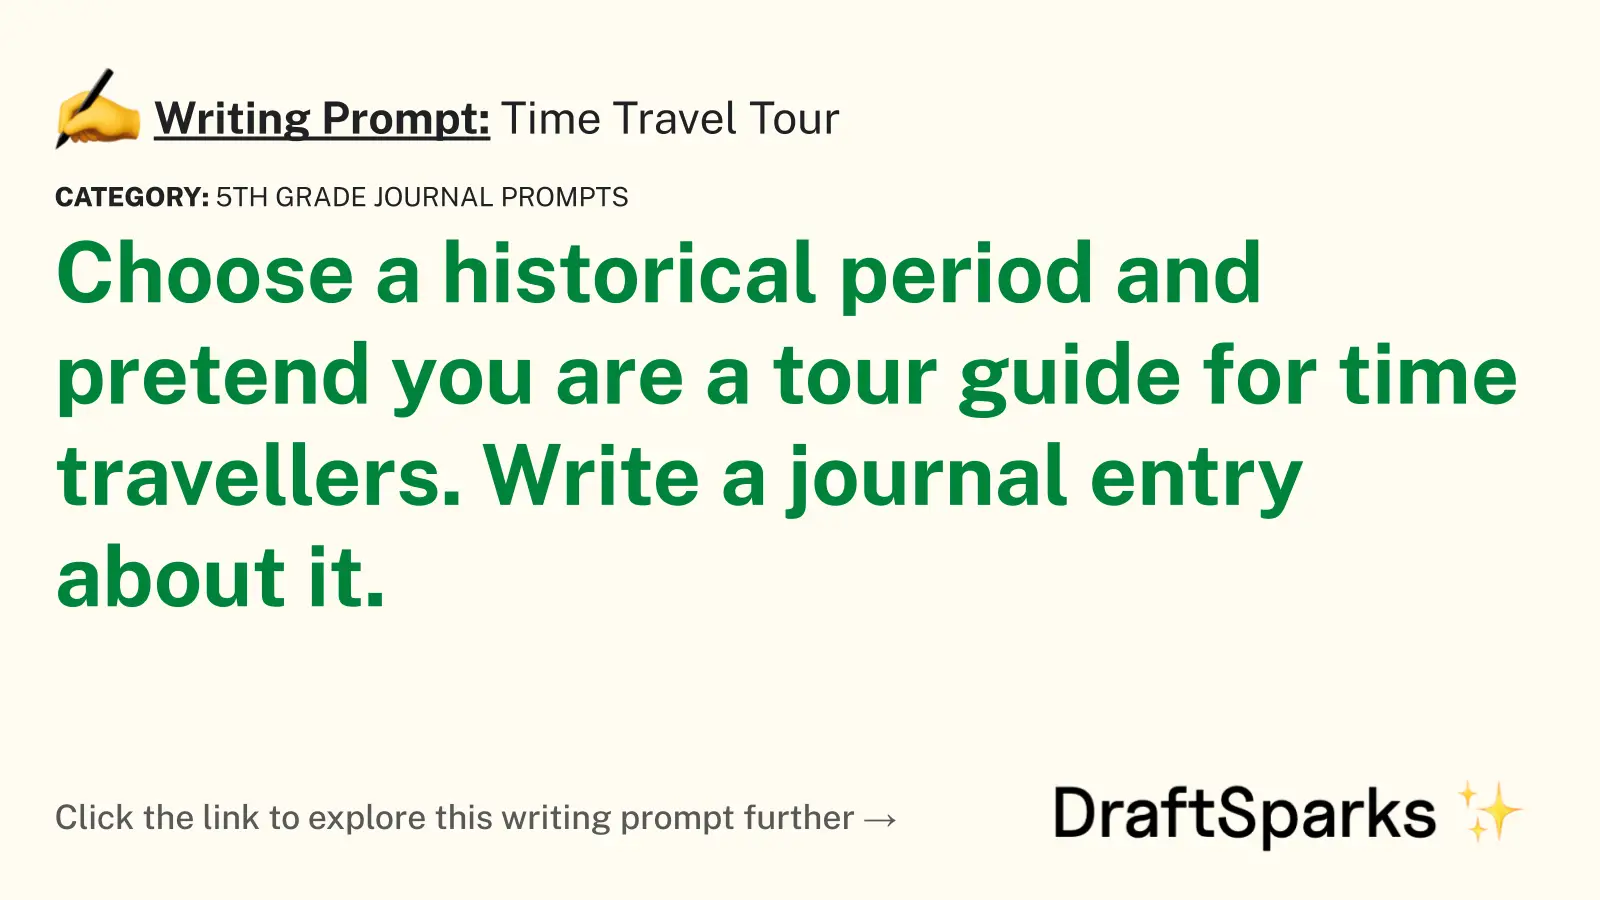 Time Travel Tour